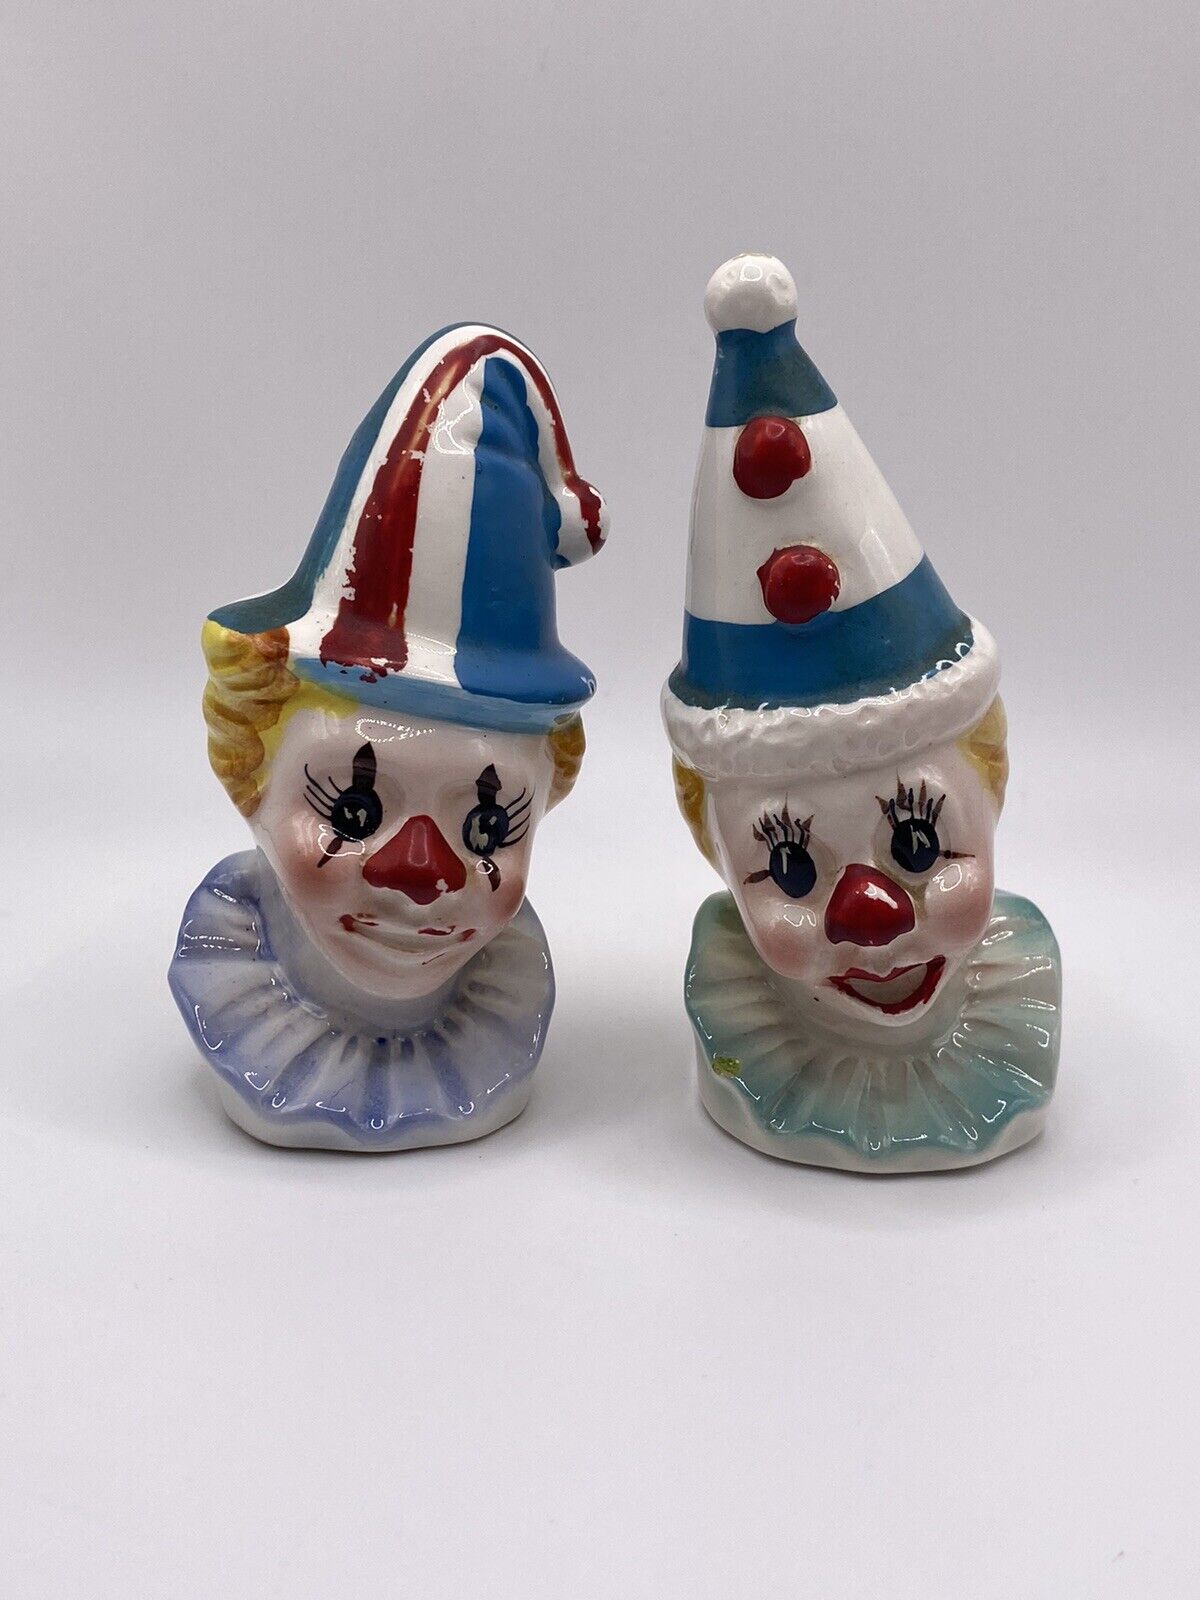 Vintage Japan Clown Salt & Pepper Shaker Set